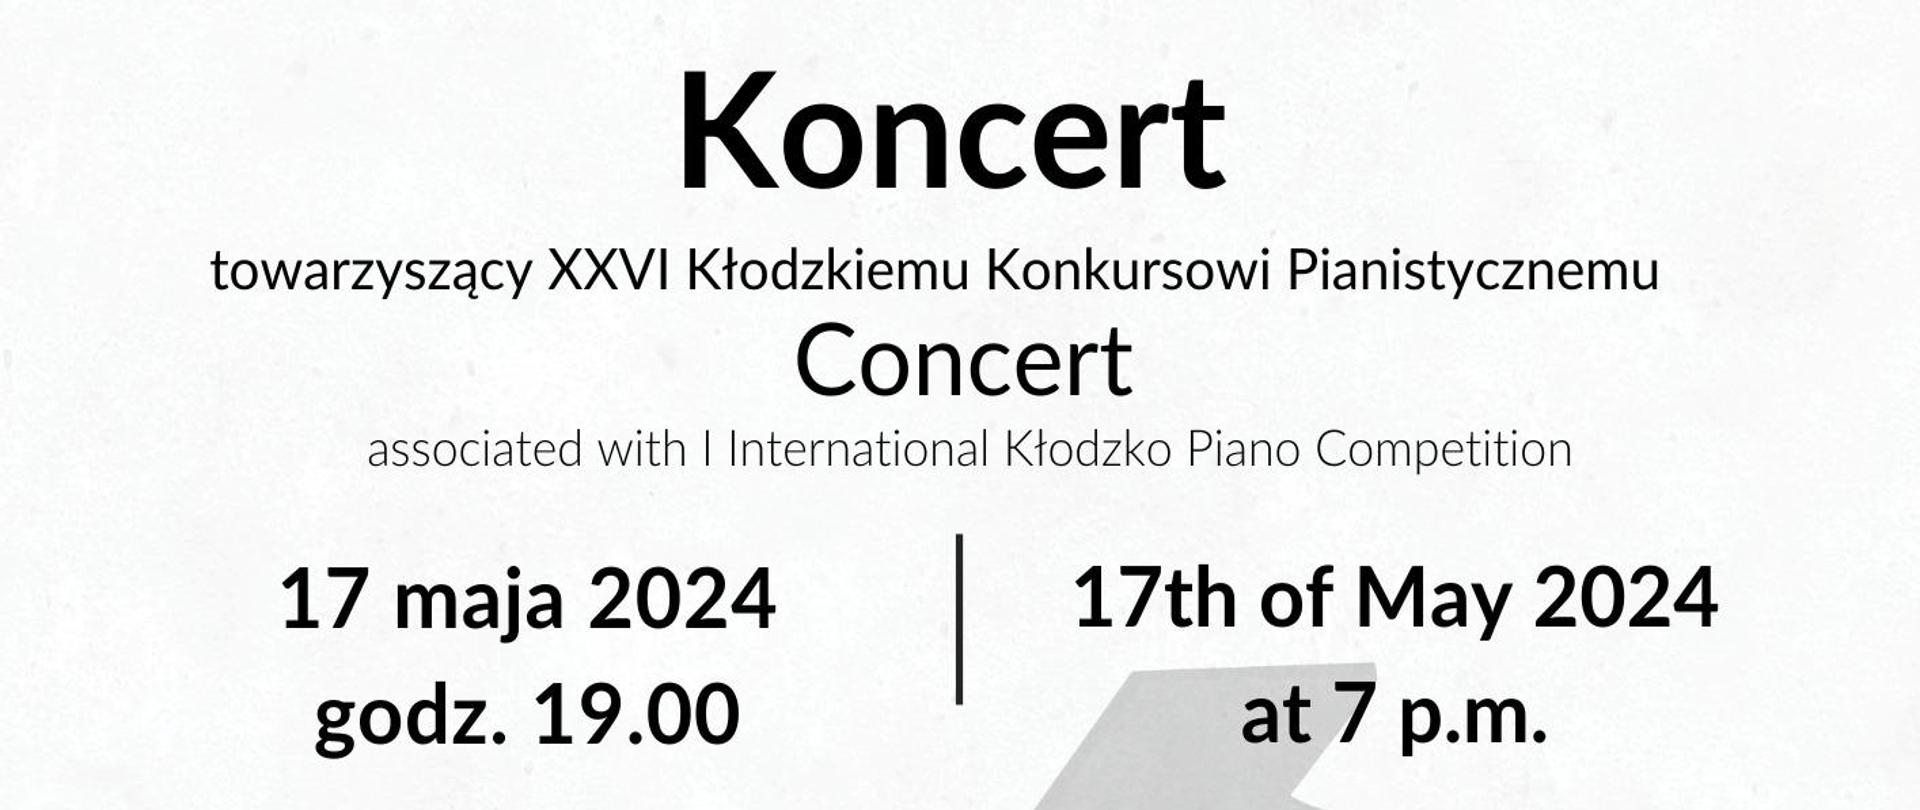 Plakat na białym tle wraz z logami organizatorów oraz szczegółowymi informacjami dotyczącymi Koncertu w Bardzie 17 maja 2024 towarzyszący XXVI Kłodzkiemu Konkursowi Pianistycznemu